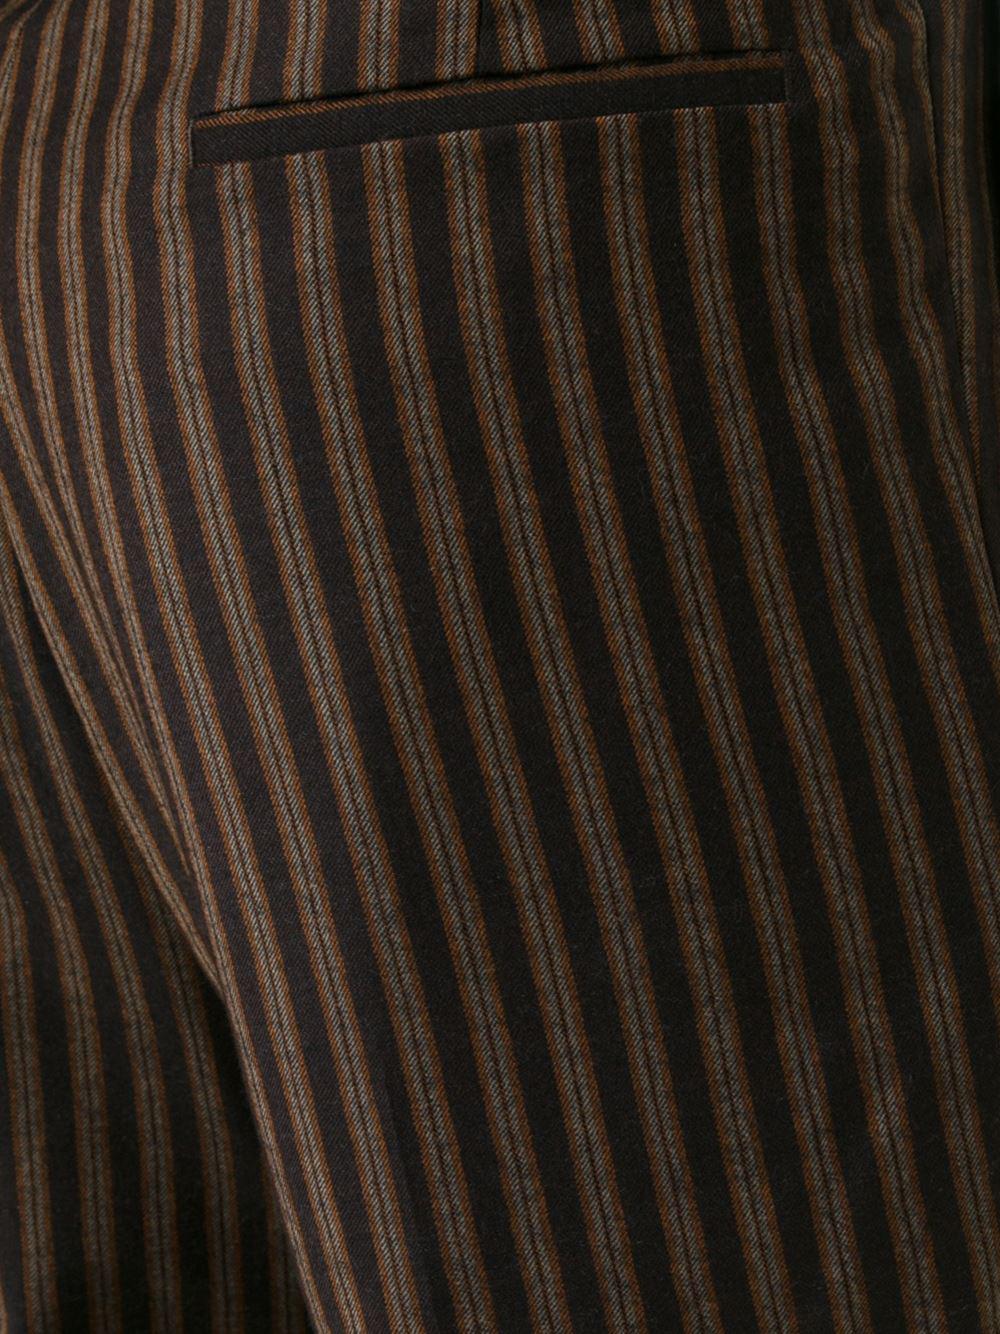 Lyst - Vivienne Westwood Pinstripe Pants in Brown for Men